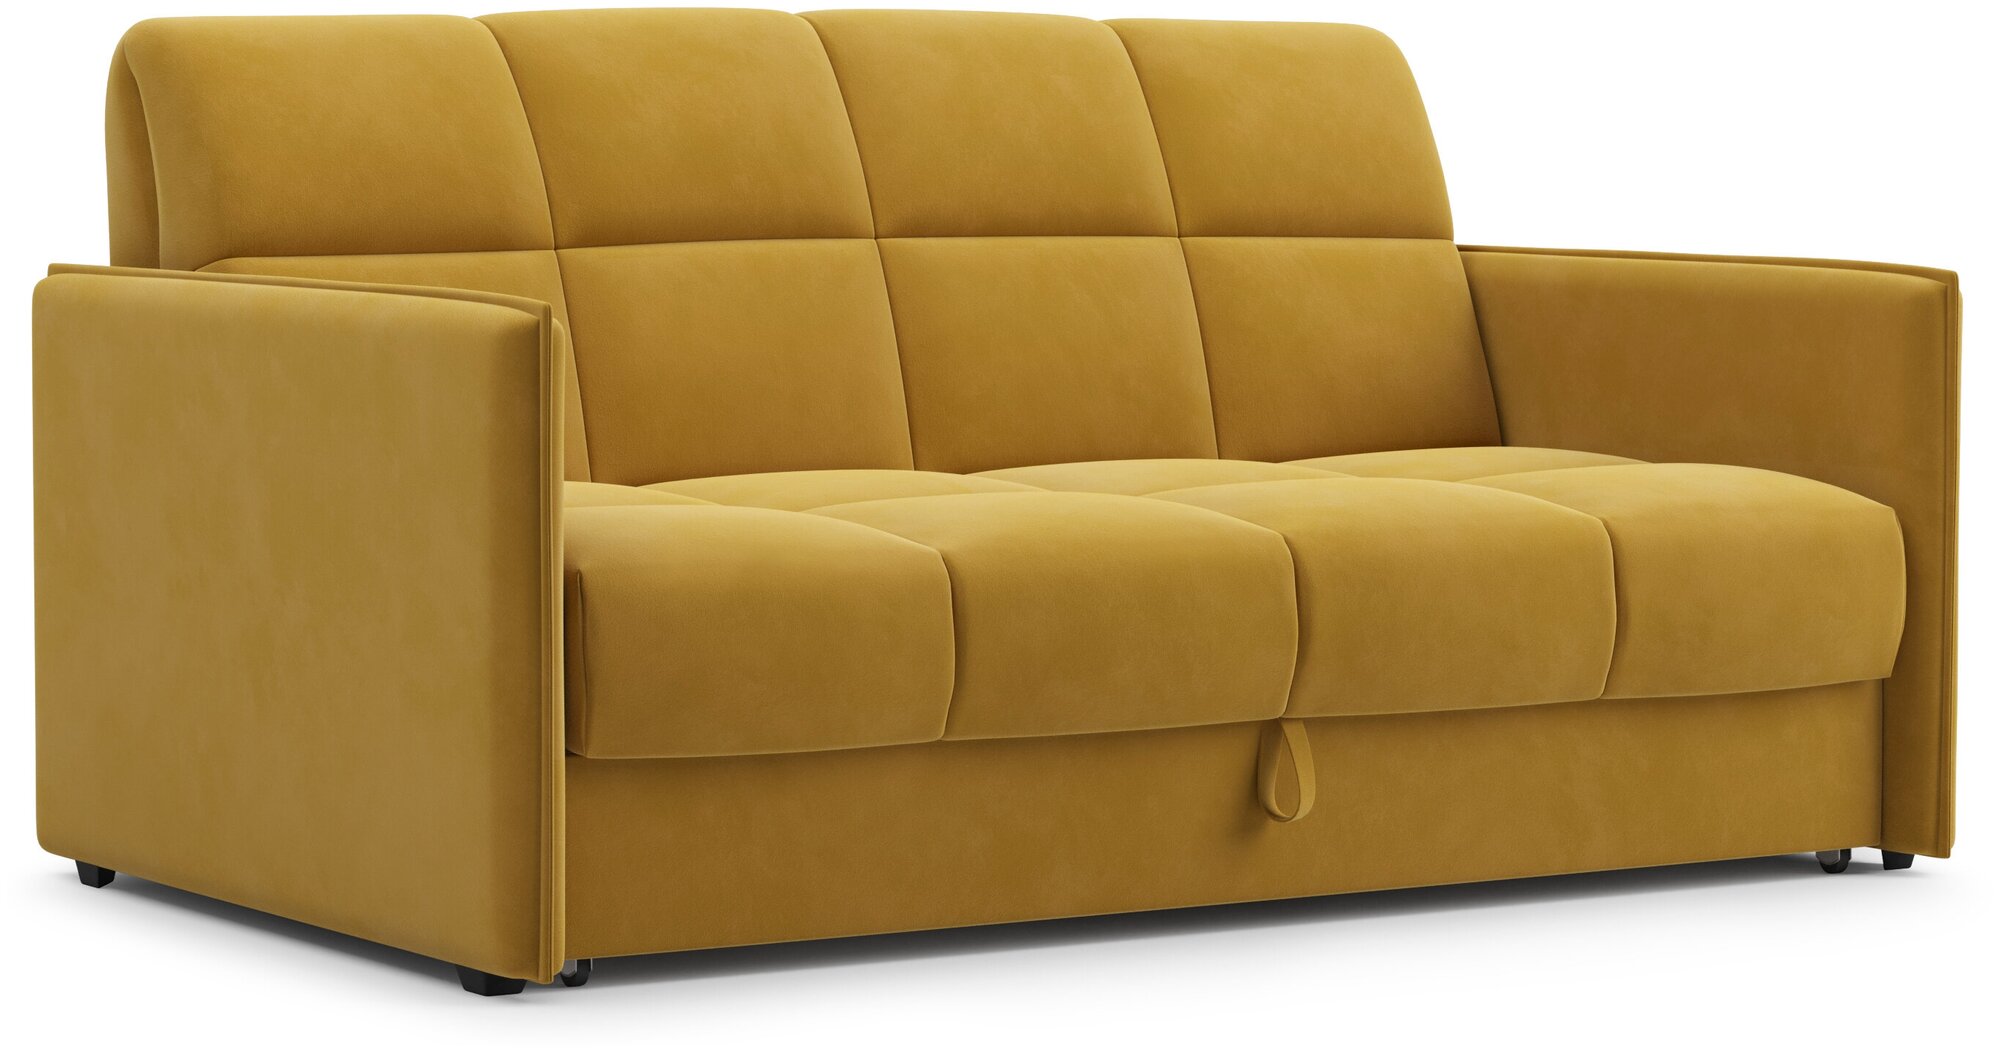 Диван Абрикос, аккордеон на пружинном блоке, диван кровать, диван для ежедневного сна, узкие подлокотники